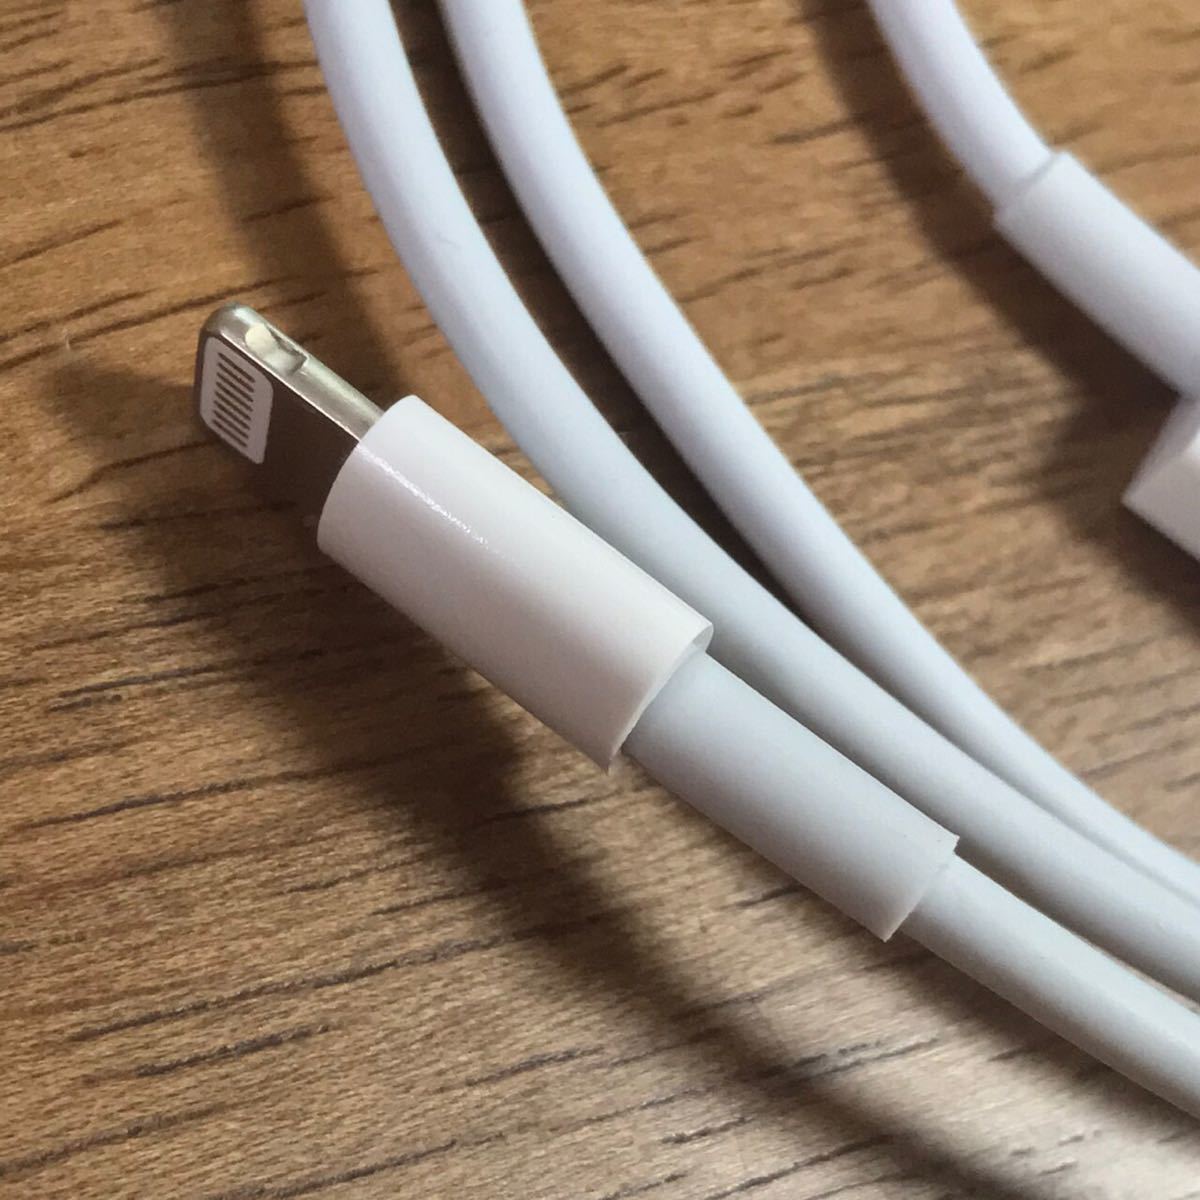 iPhone 充電器 充電ケーブル コード lightning cableライトニングケーブル USBケーブル 格安 SALE セール 3点セット